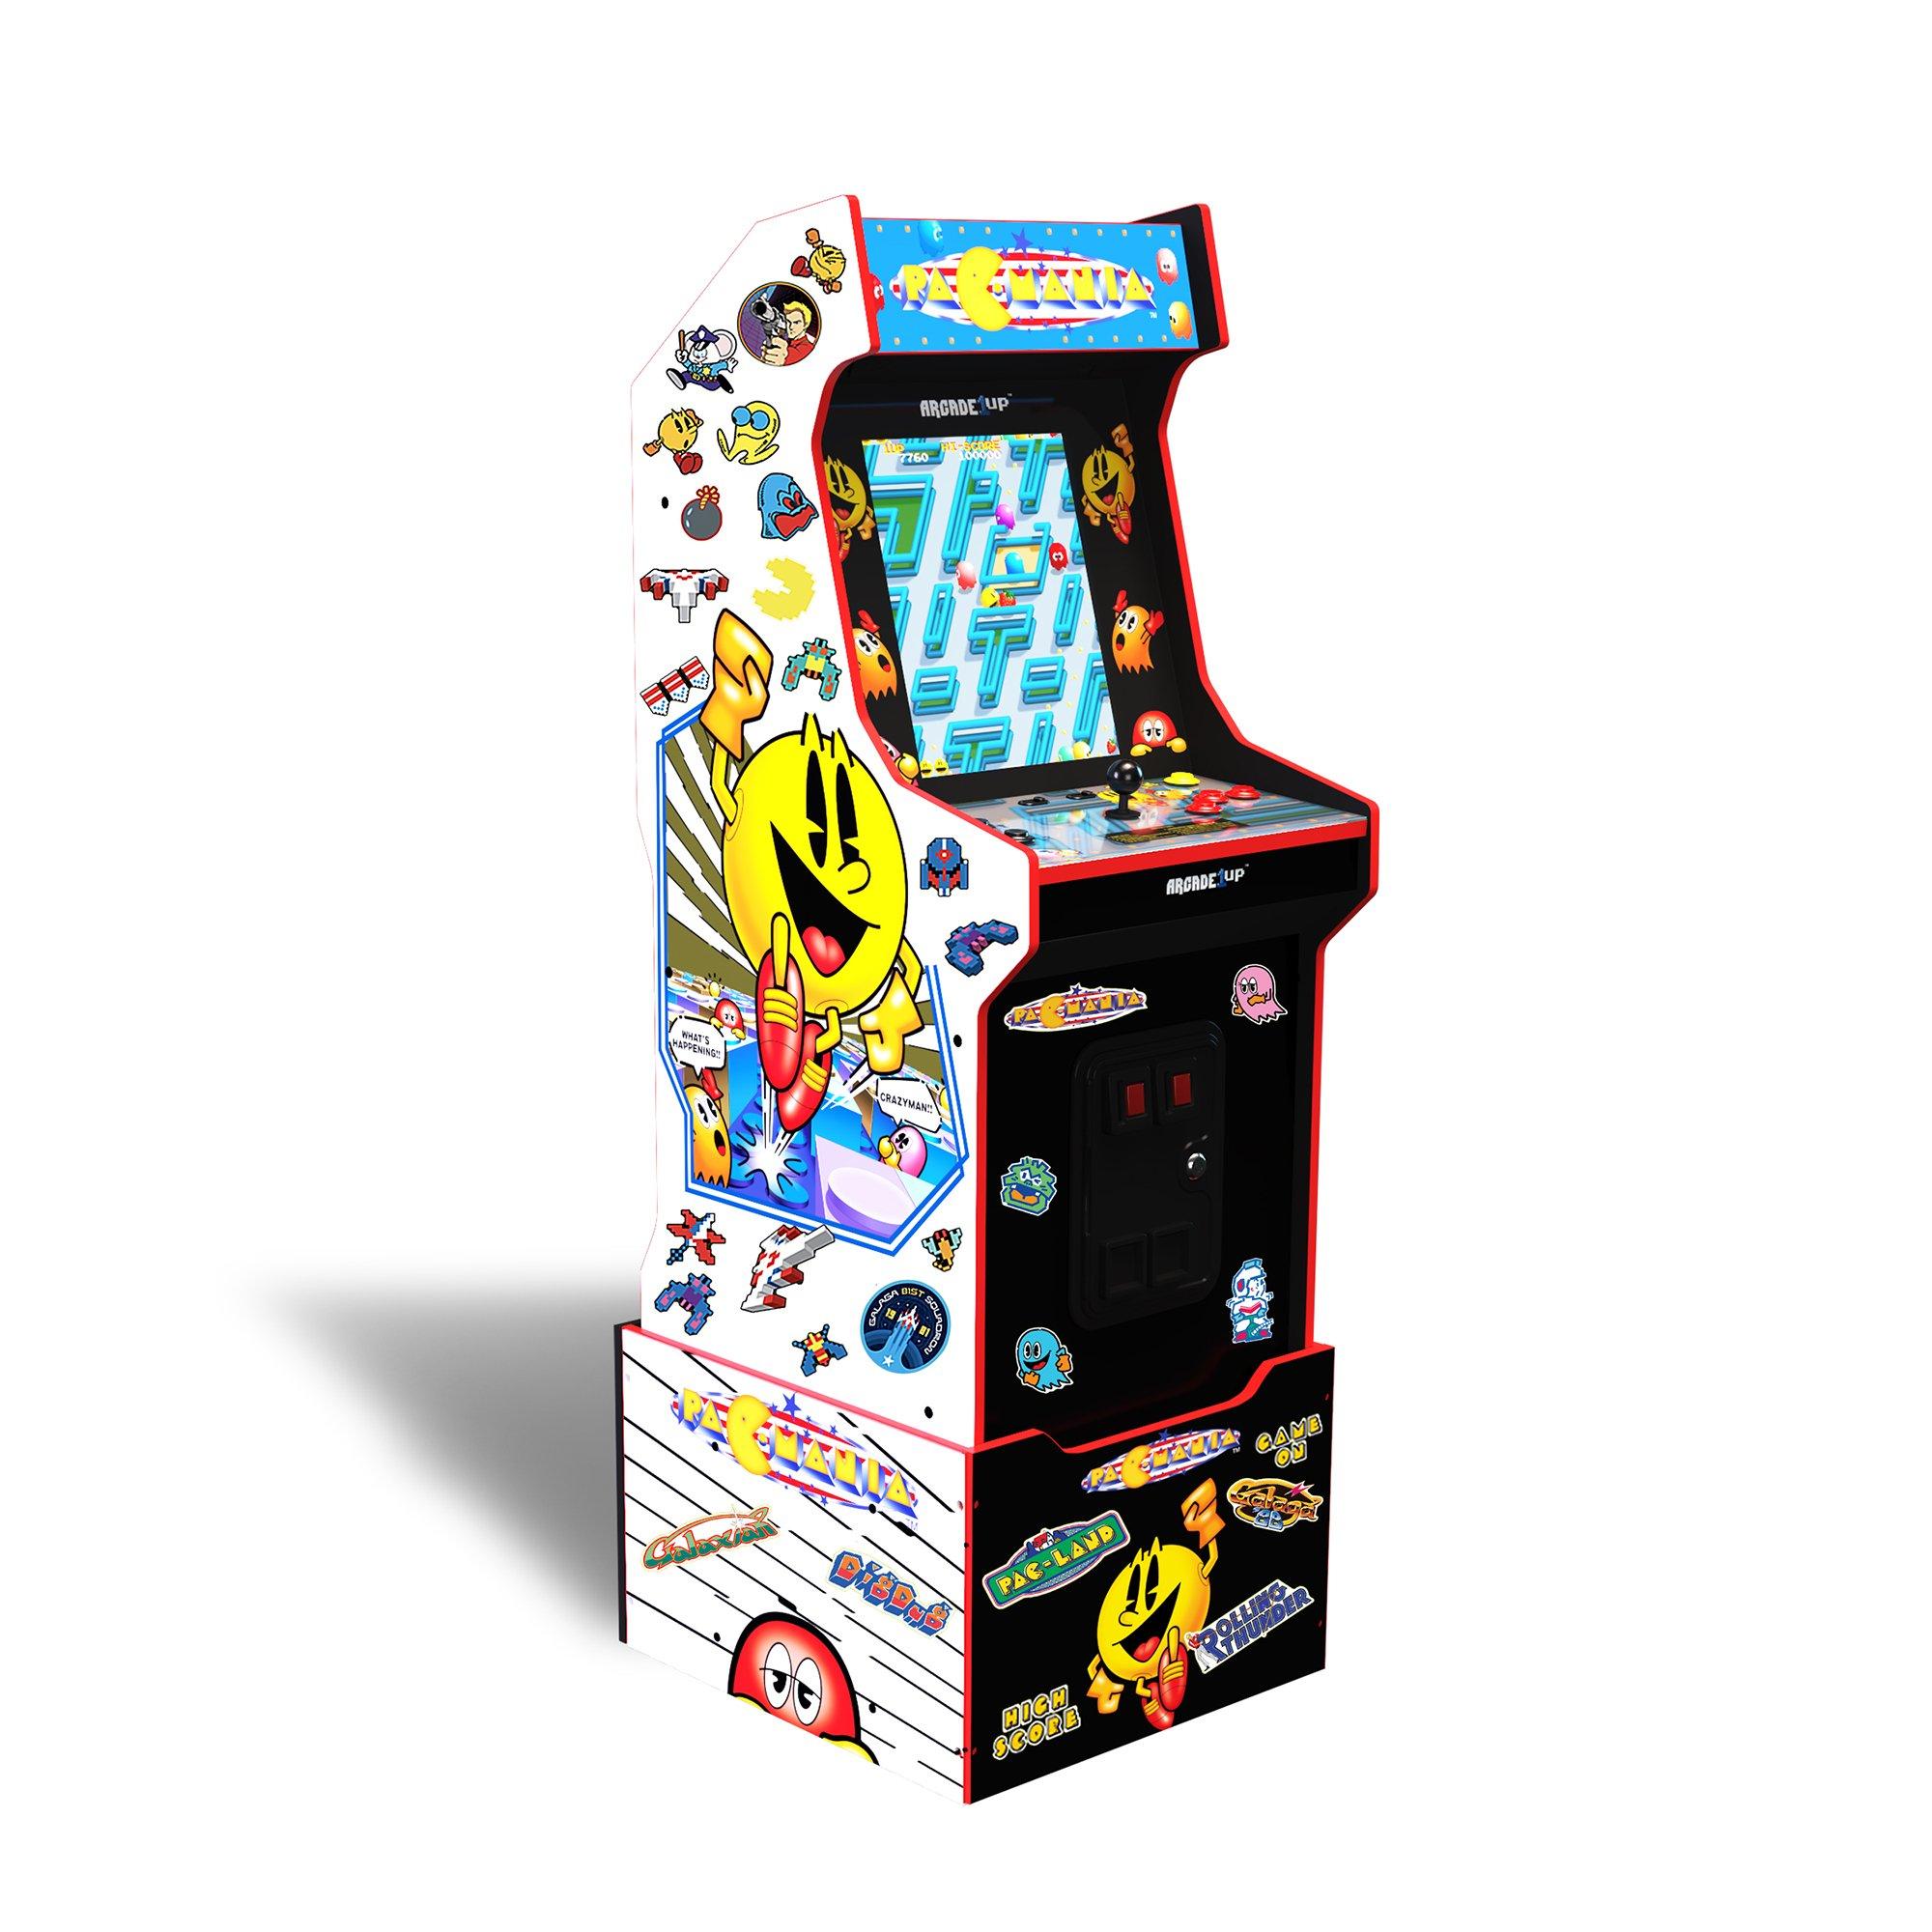 https://media.gamestop.com/i/gamestop/20006555/Arcade1Up-Pacmania-Bandai-Legacy-Edition-Arcade-Cabinet-with-Stickers